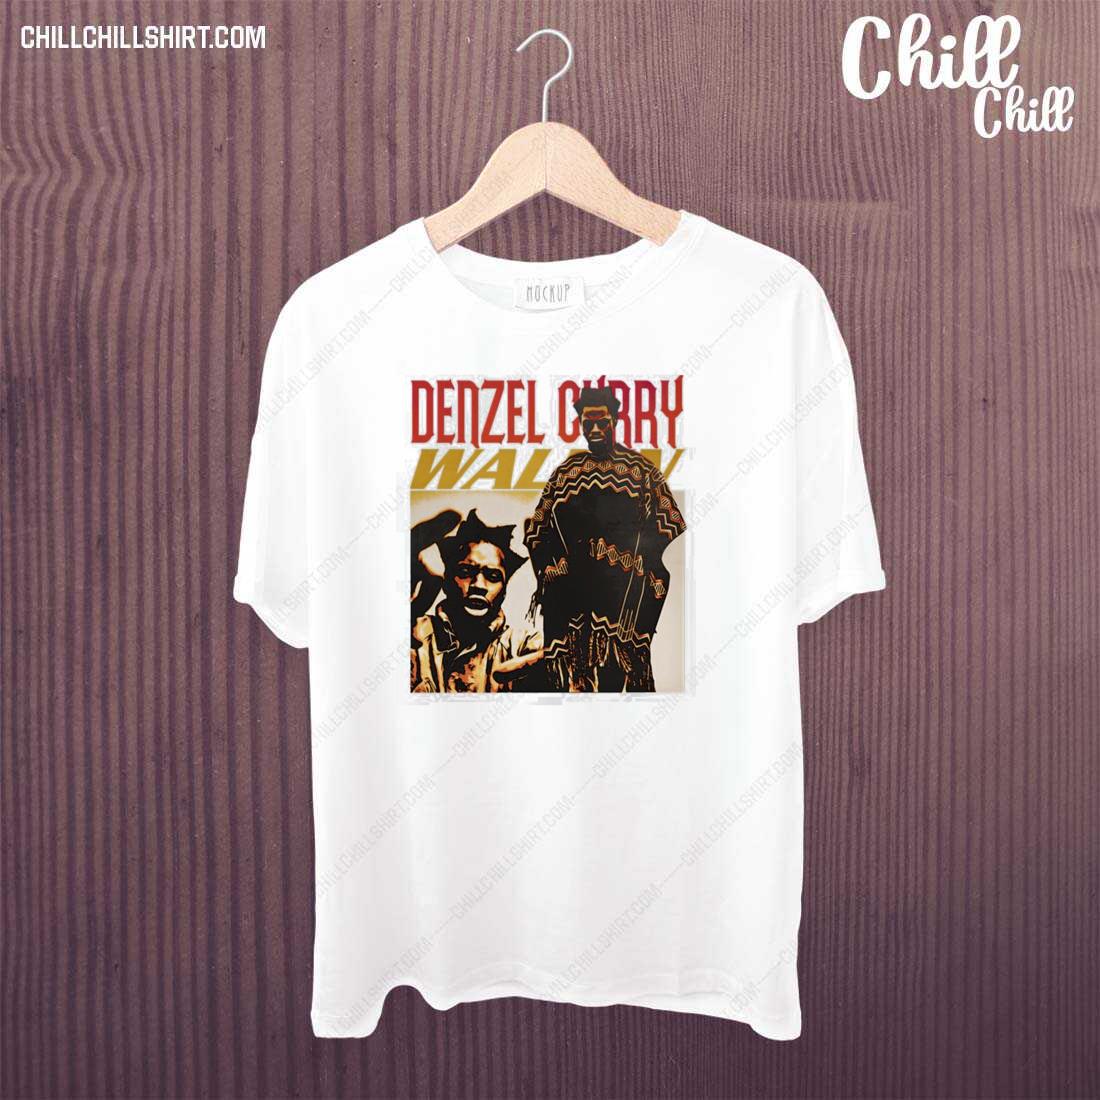 Official denzel Curry 90s Retro Design T-shirt